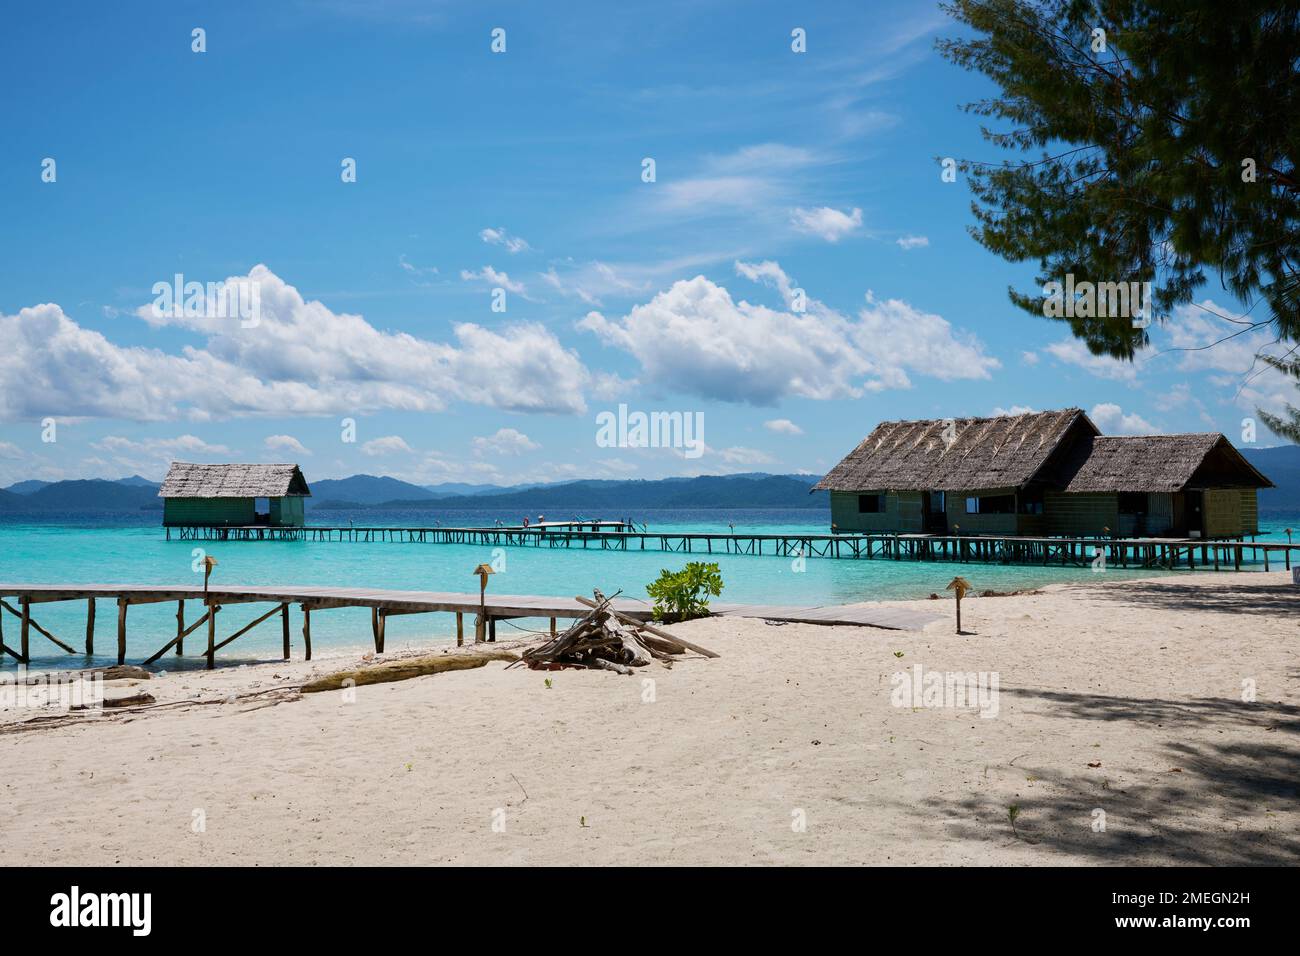 Wai Diving Resort on Raja Ampat Islands, Indonesia Stock Photo